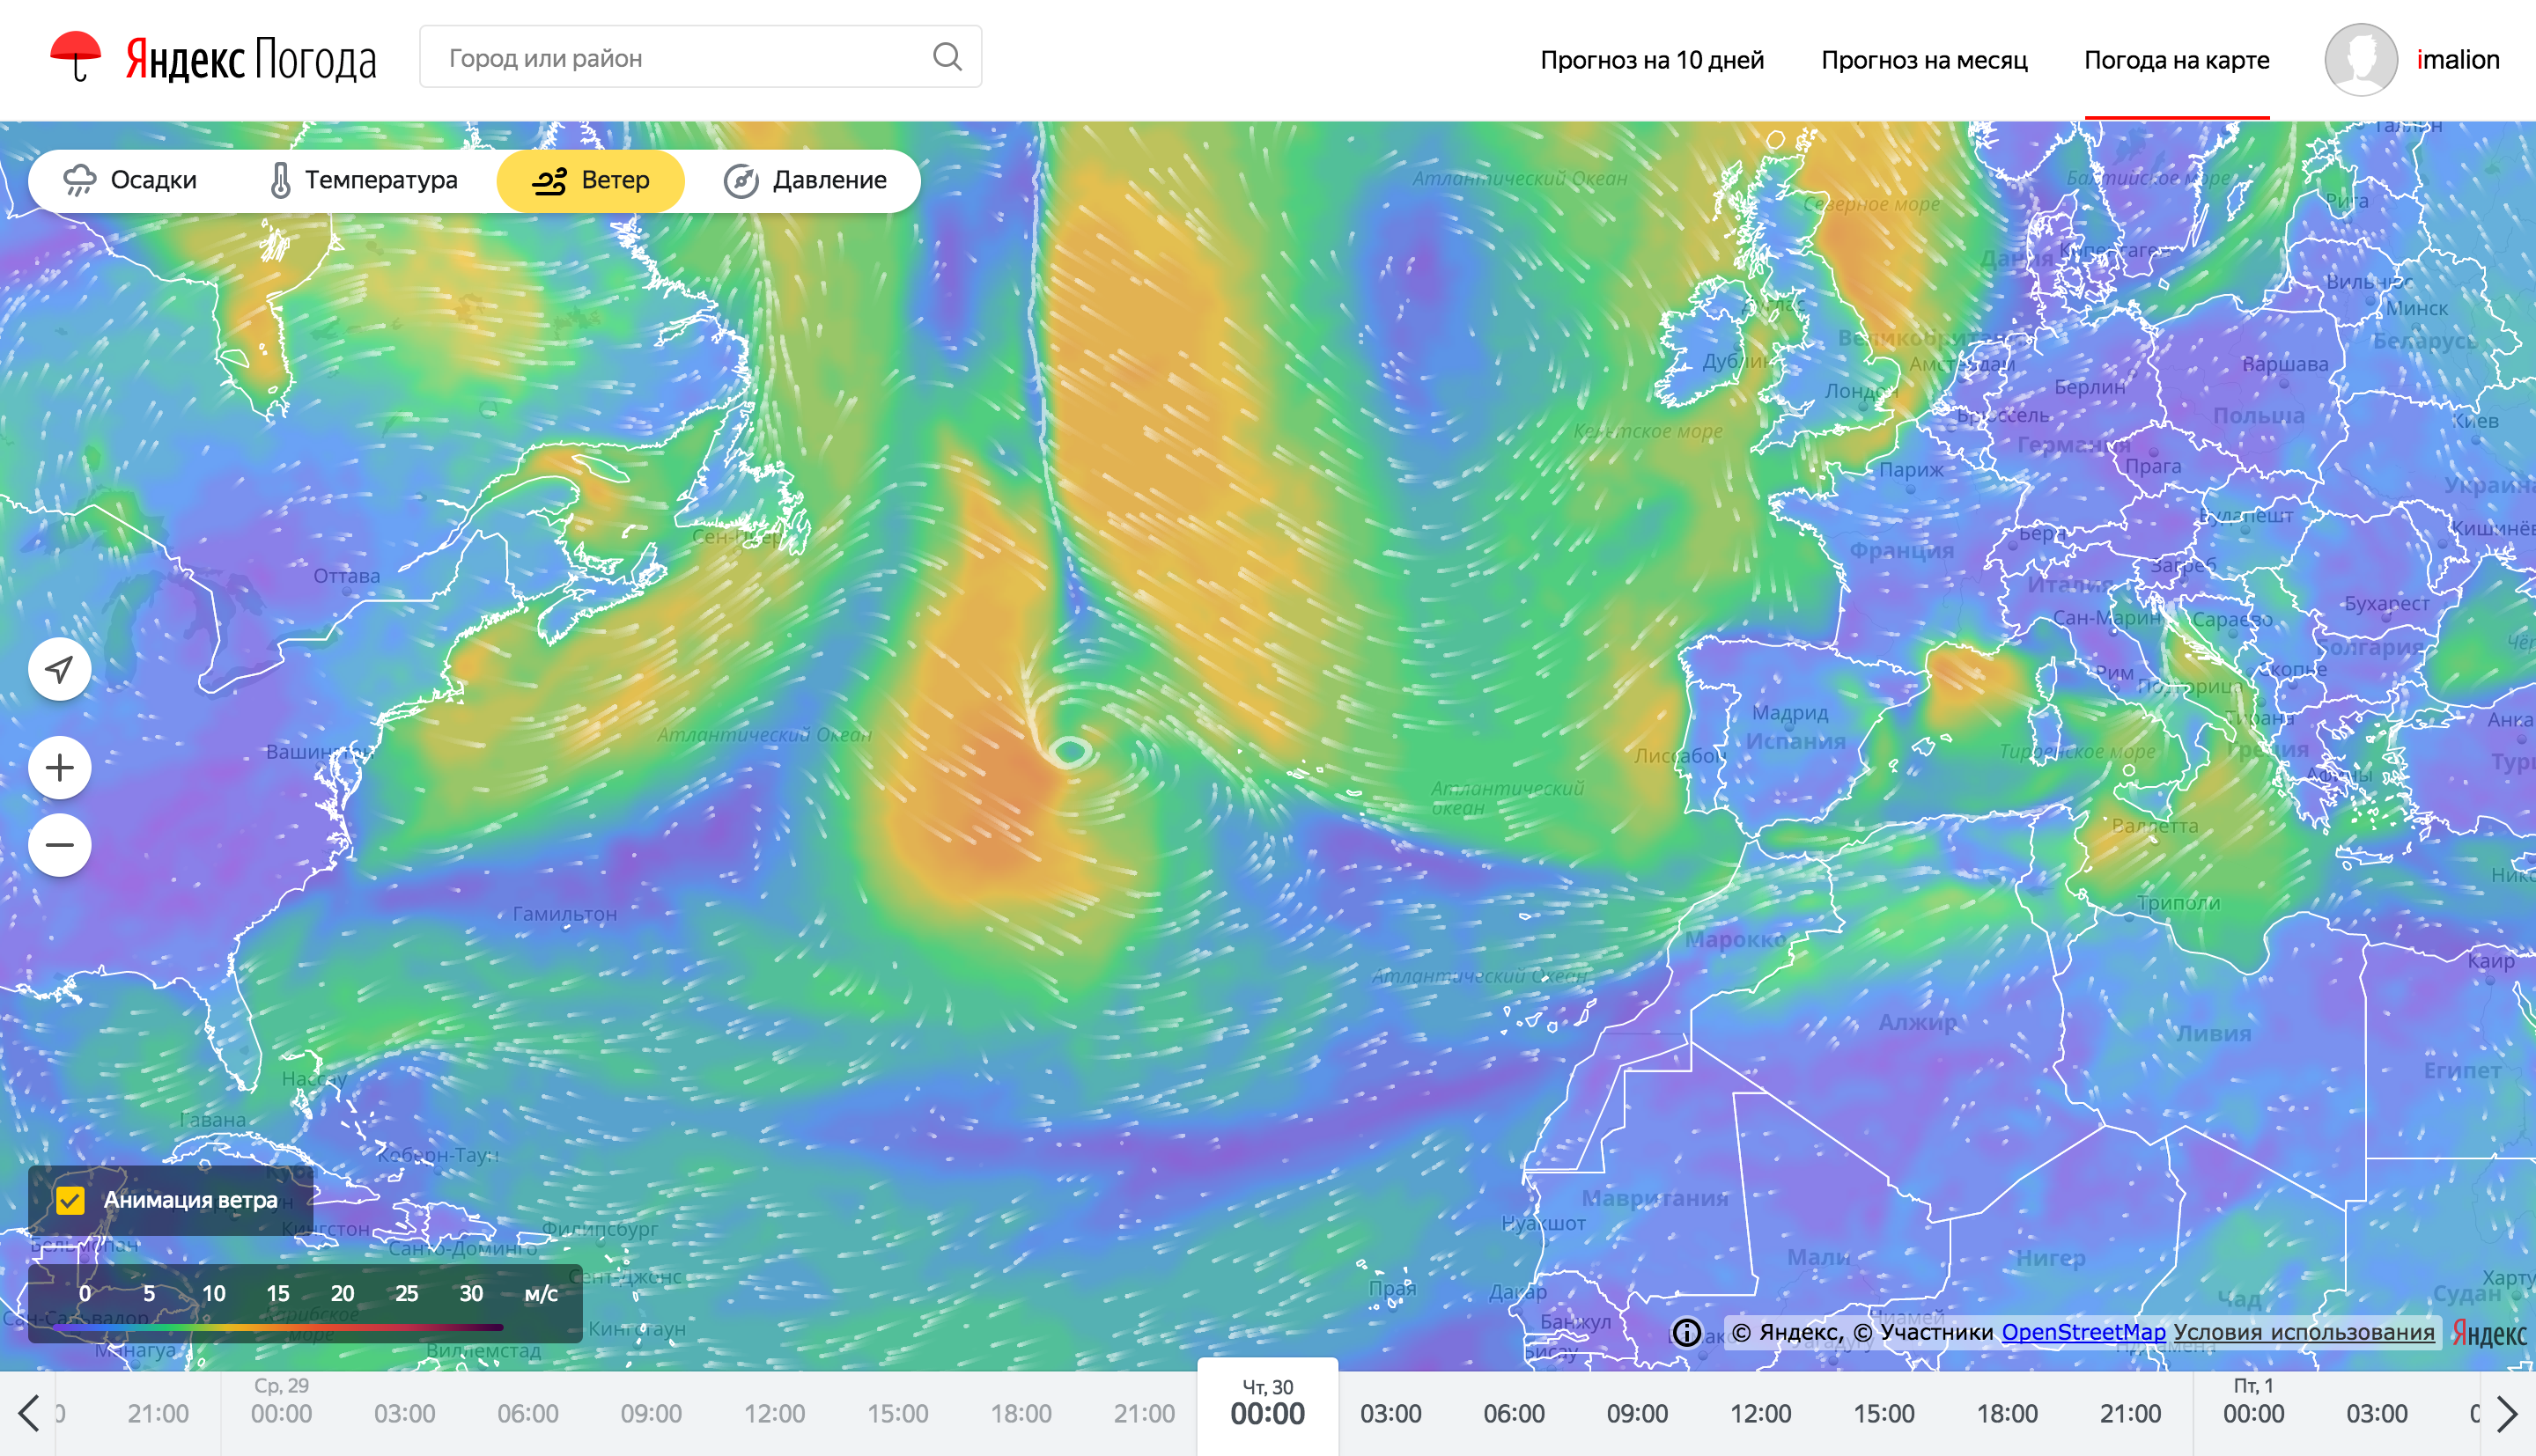 Так виглядають частки анімації вітру на картах погоди